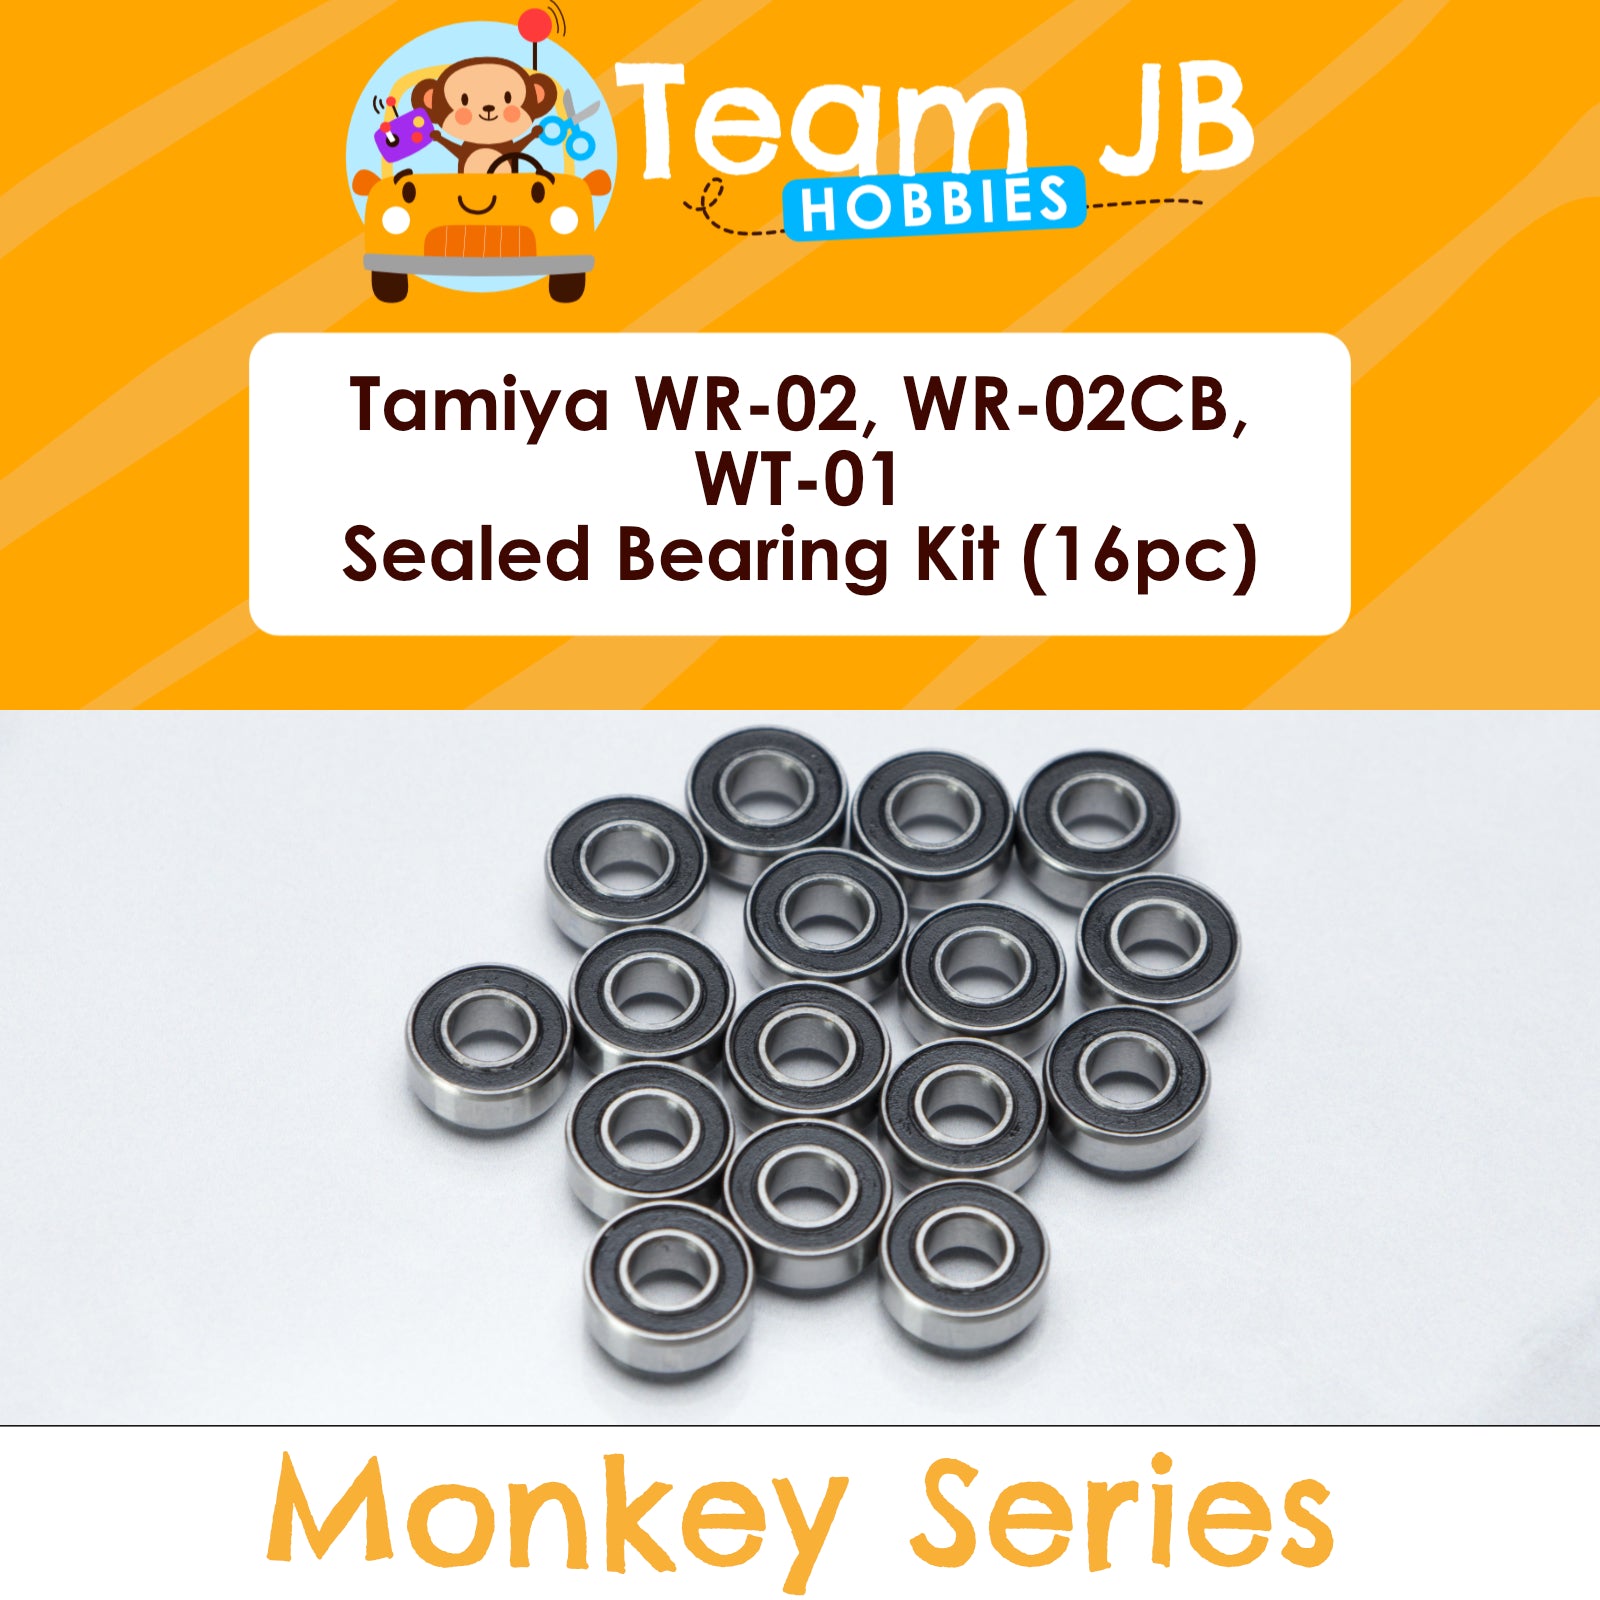 Tamiya WR-02, WR-02CB, WT-01 - Sealed Bearing Kit